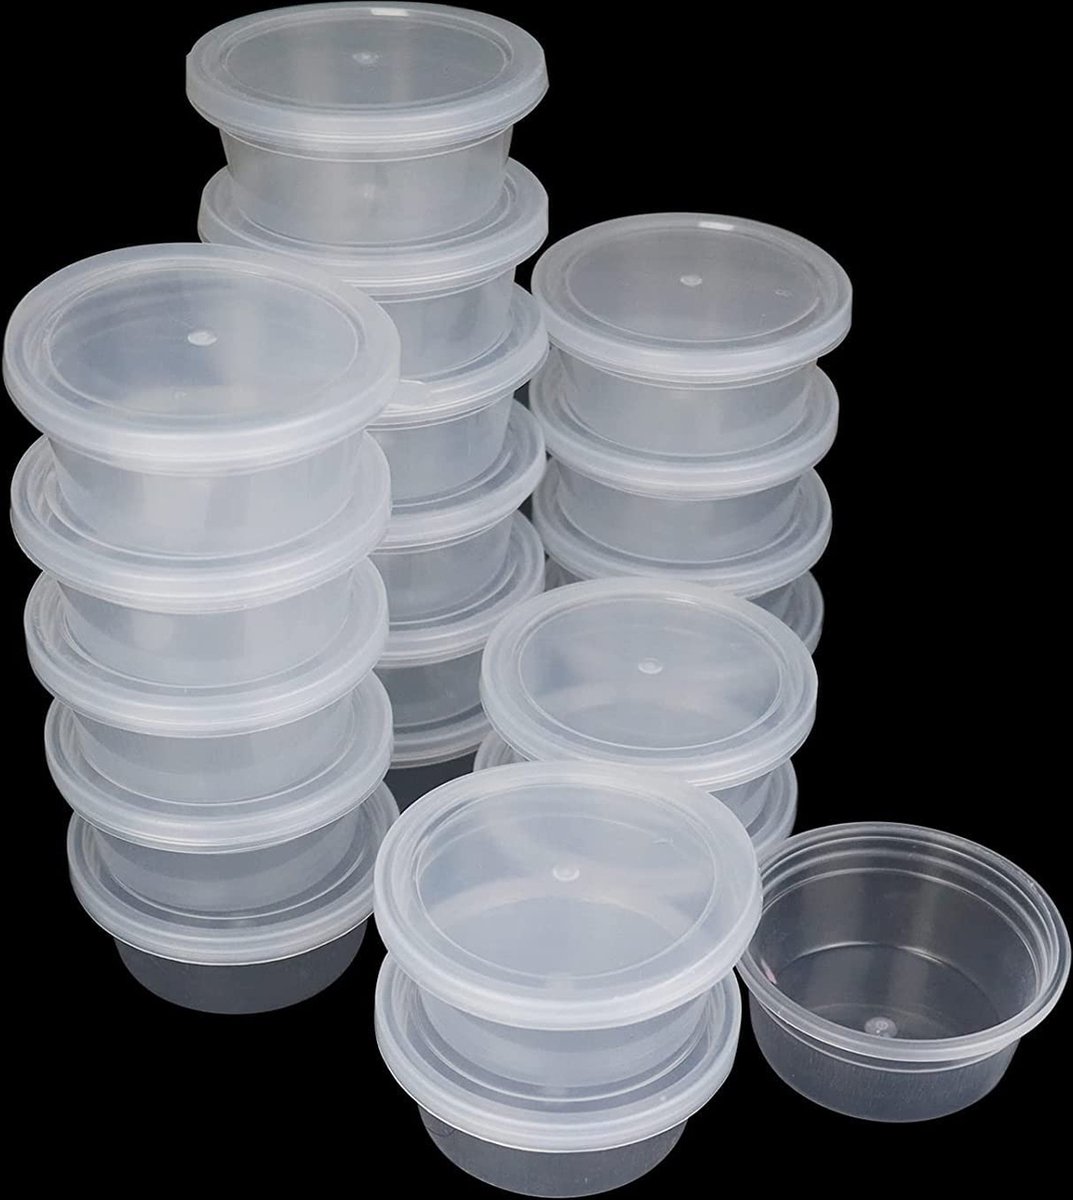 GZhaimai 50 stuks slime containers, ronde mini-kunststof containers met deksel voor kleine voorwerpen of andere kleine knutselspullen op te bergen